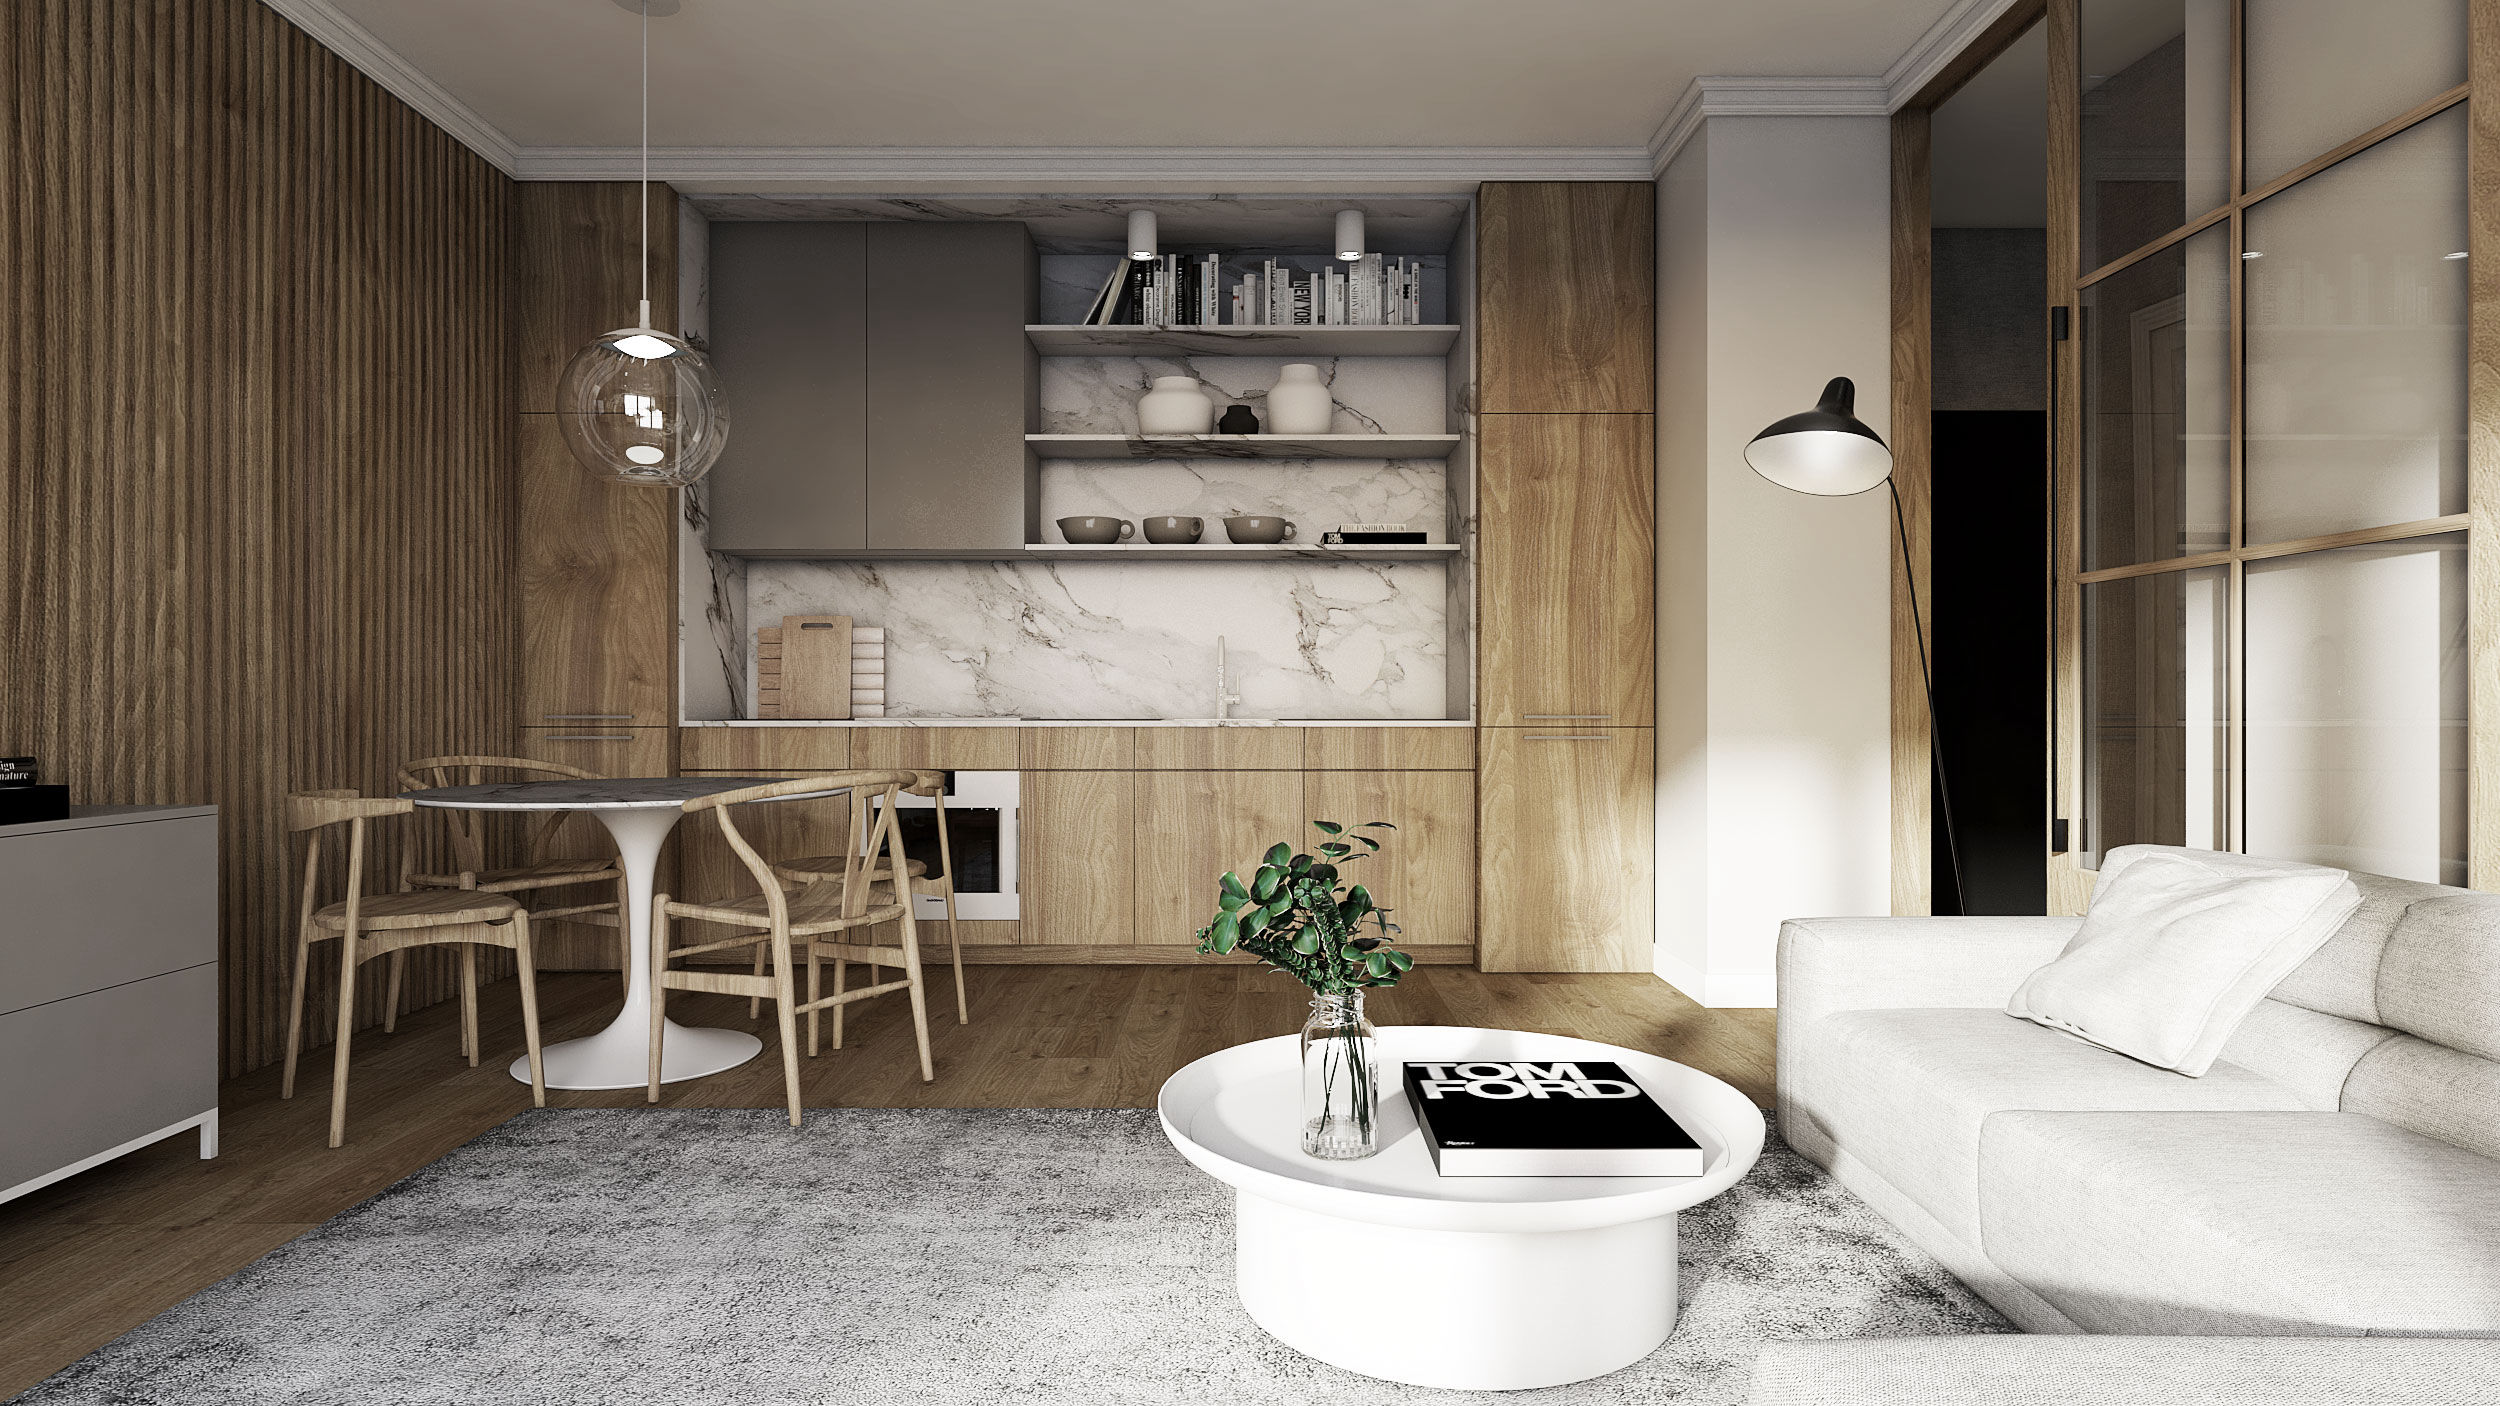 projekt wnętrza luksusowego mikro apartamentu w gdańsku z drewnianą kuchnią i małą jadalnią z białym okrągłym stołem w stylu skandynawskim mid-century modern